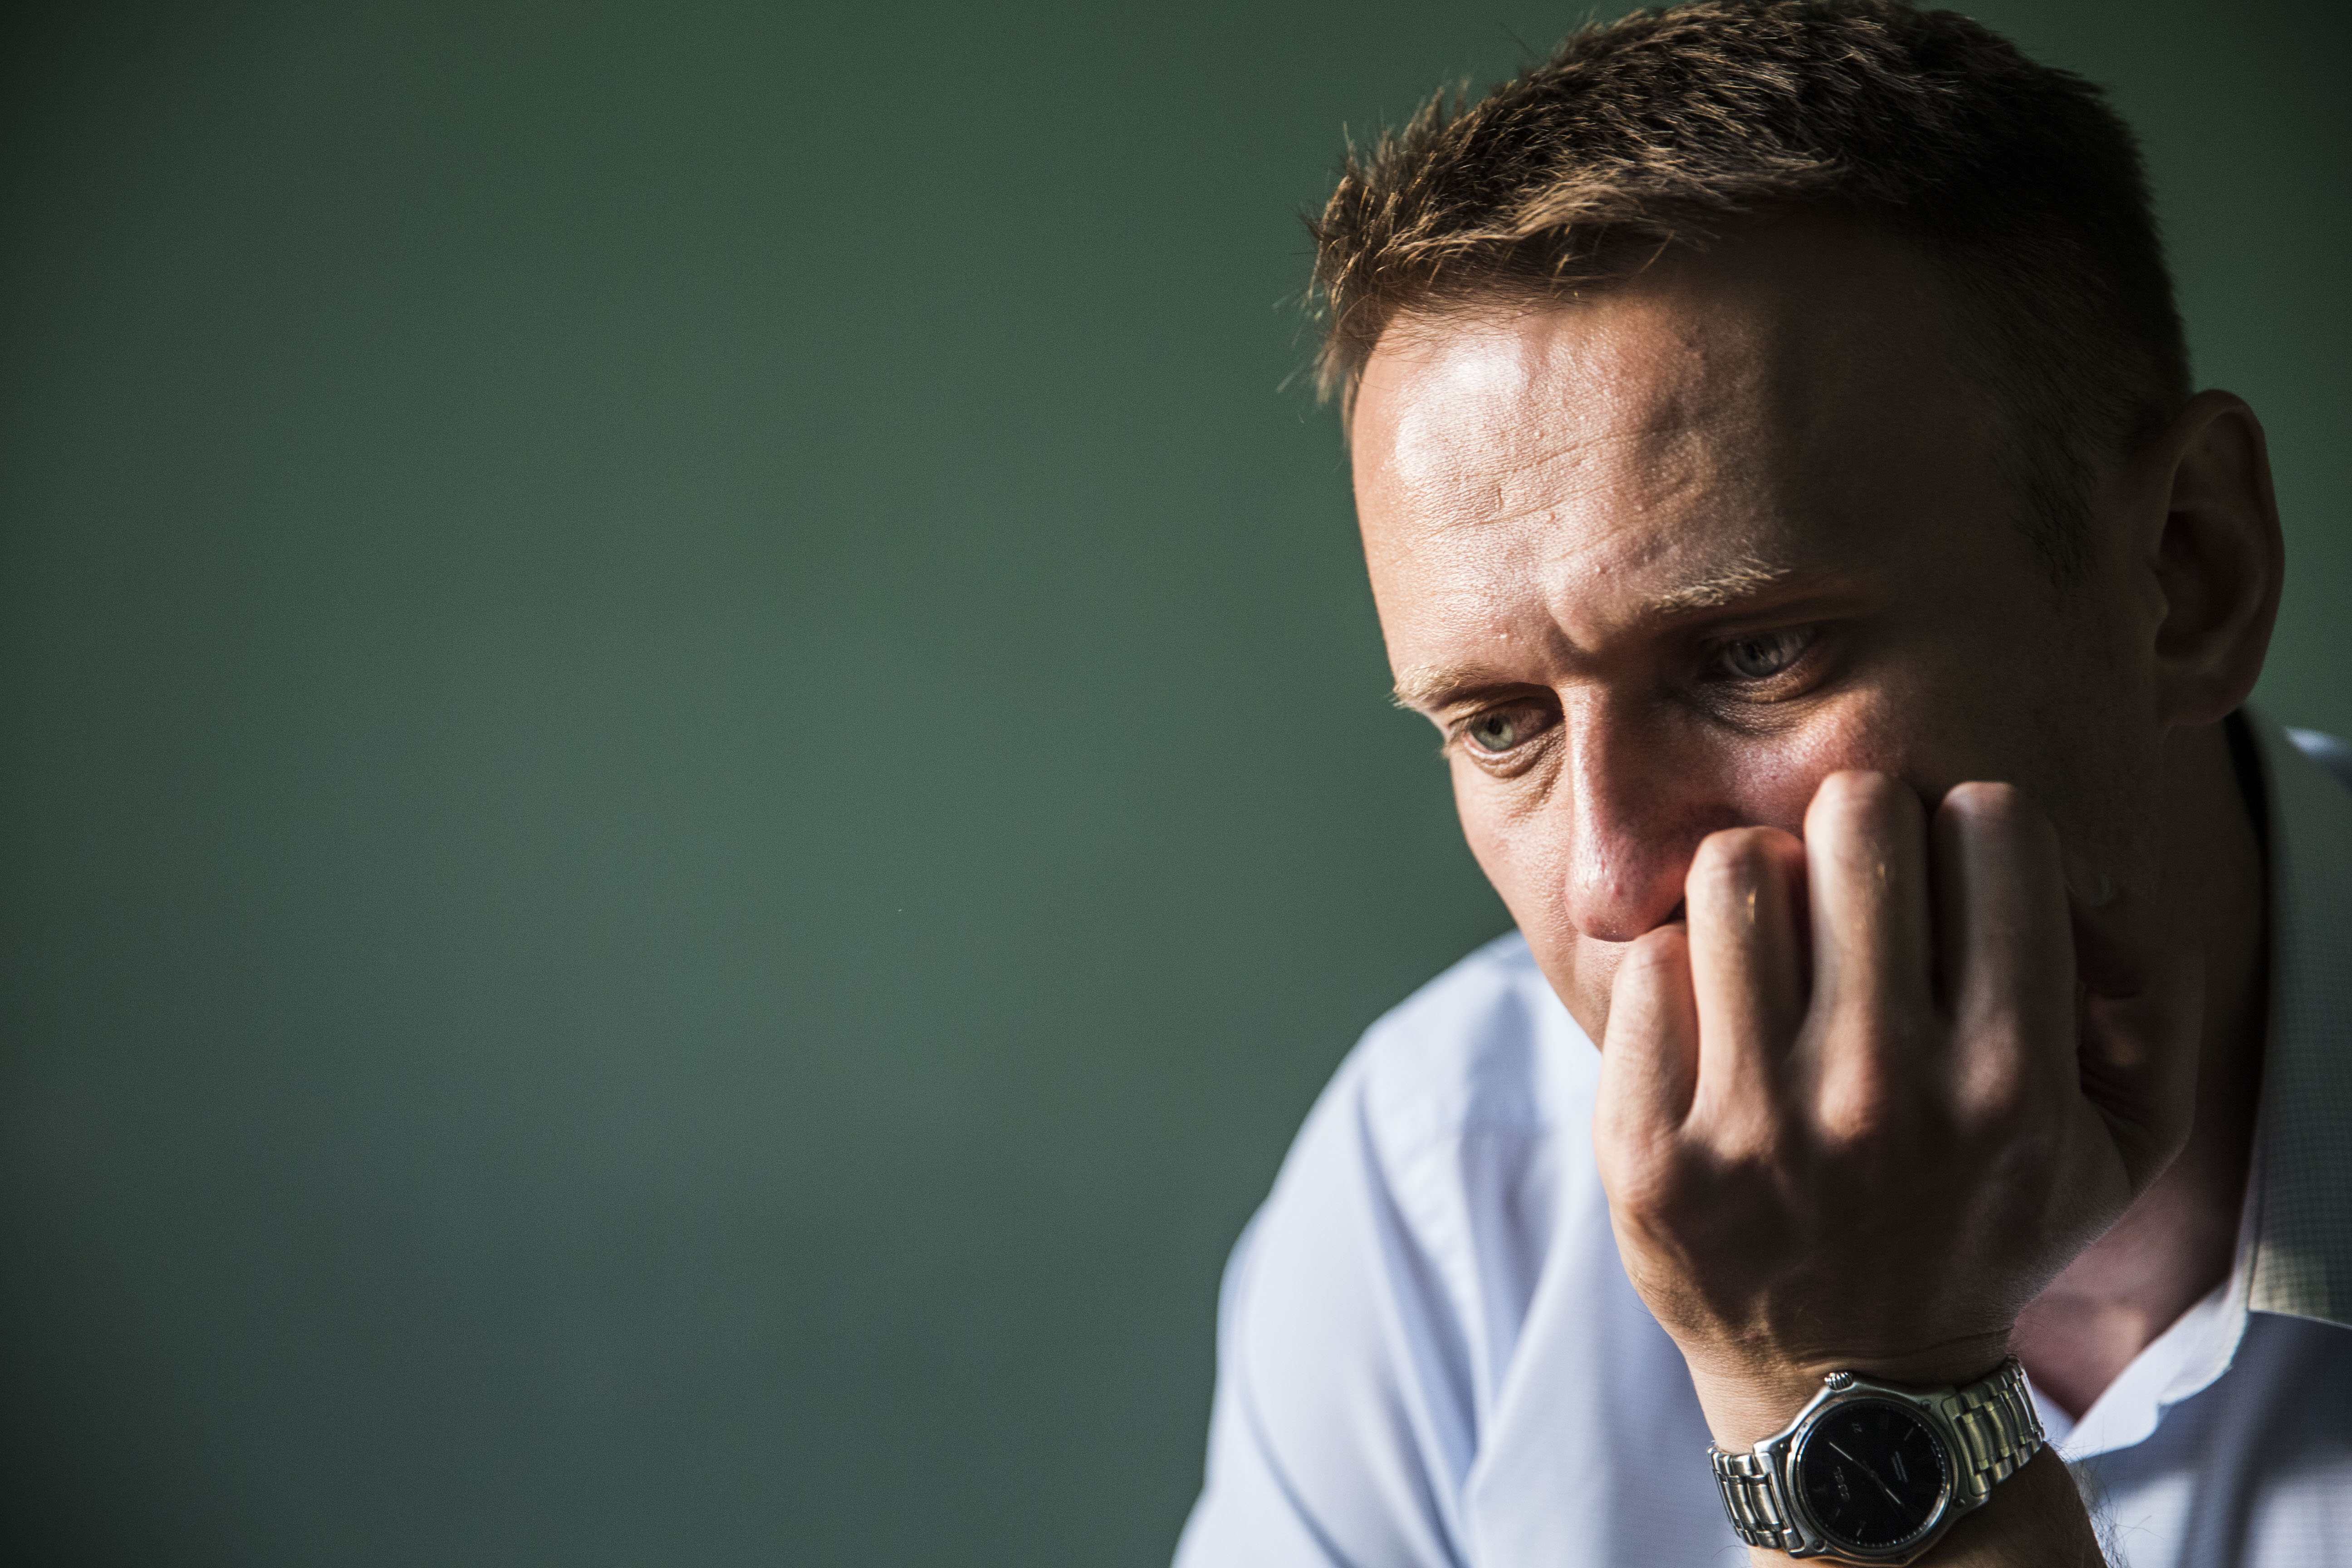 Технически результаты Навального не удовлетворительны даже для него самого